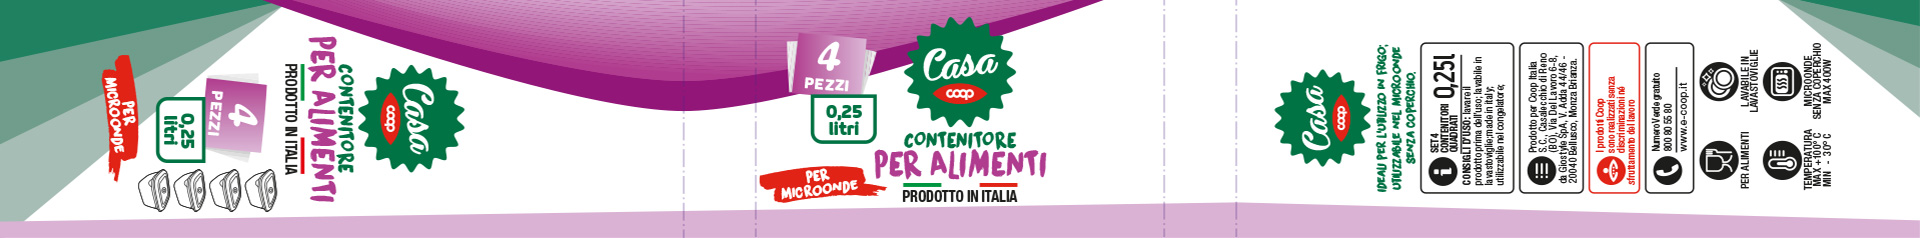 Coop Italia packaging by Start